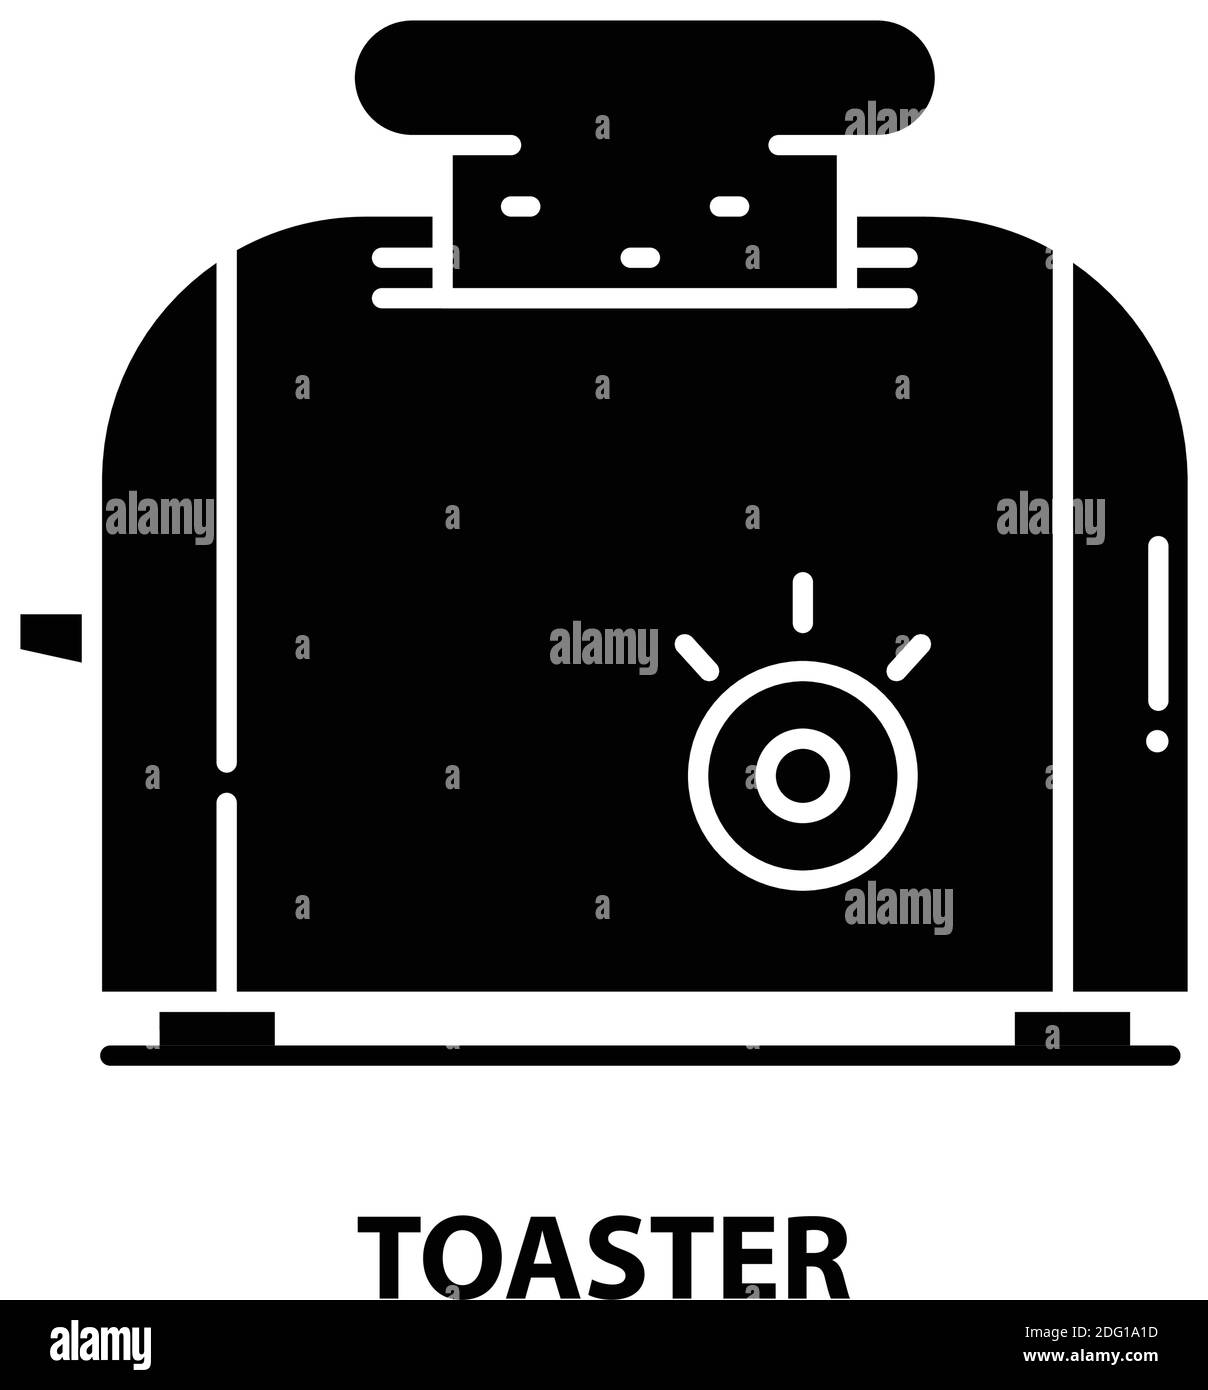 toaster-Symbol, schwarzes Vektorzeichen mit editierbaren Konturen, Konzeptdarstellung Stock Vektor